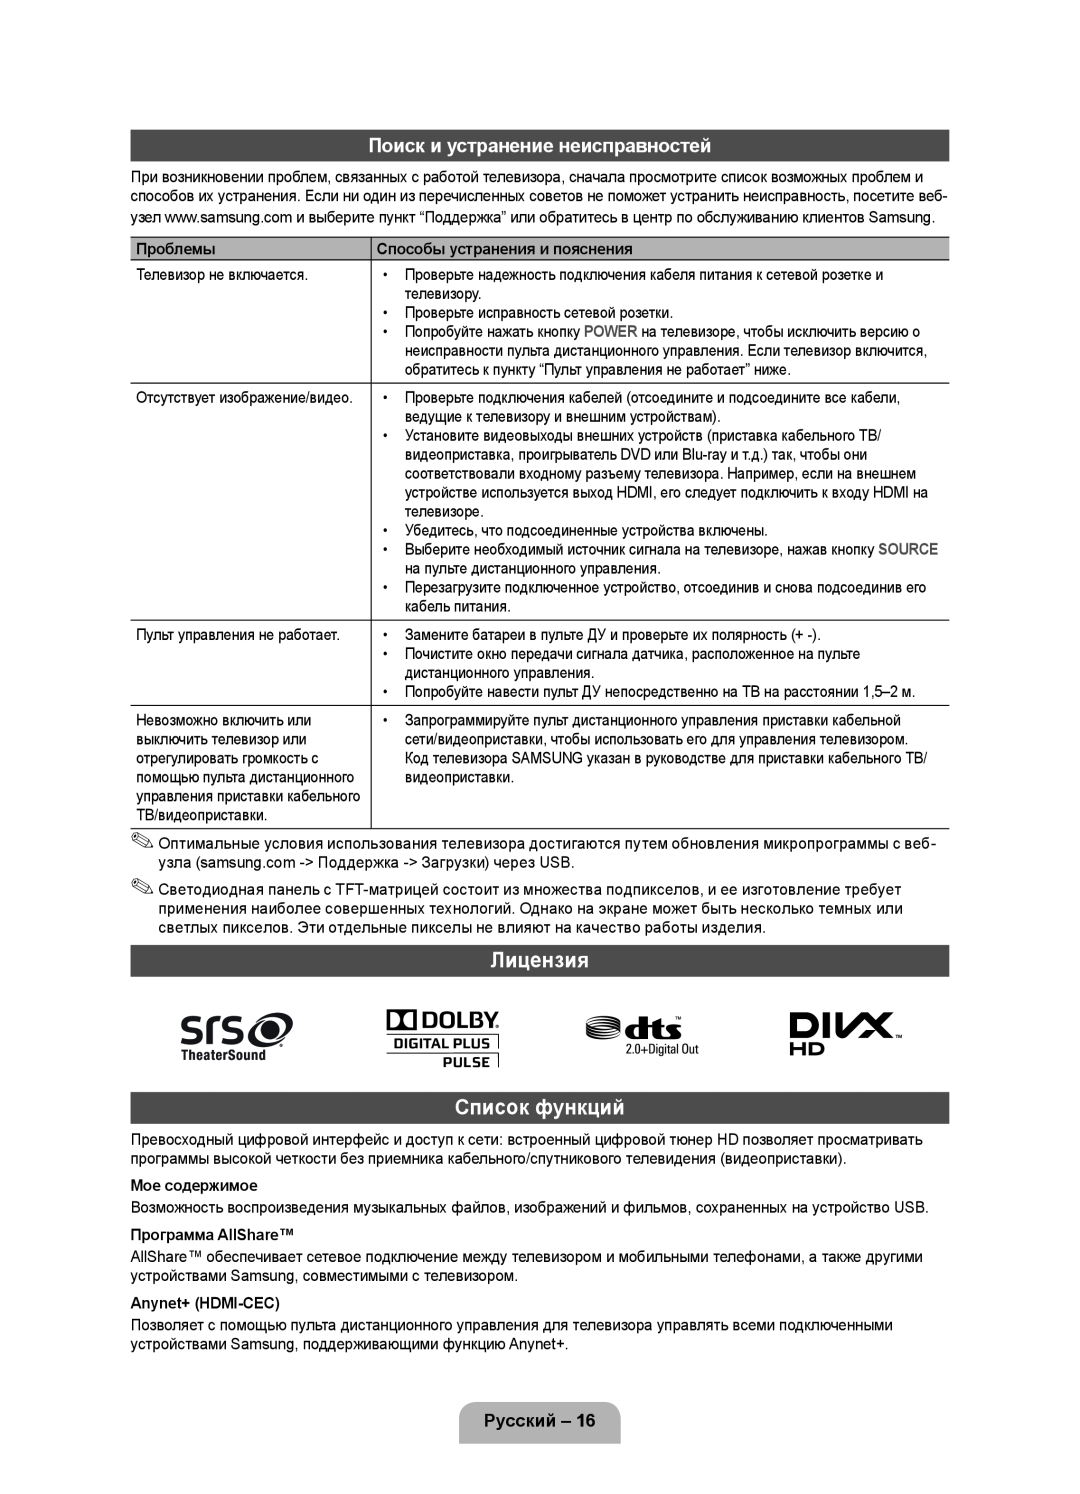 Samsung UE46D5000PWXXH manual Лицензия Список функций, Поиск и устранение неисправностей, Русский, Проблемы, Мое содержимое 